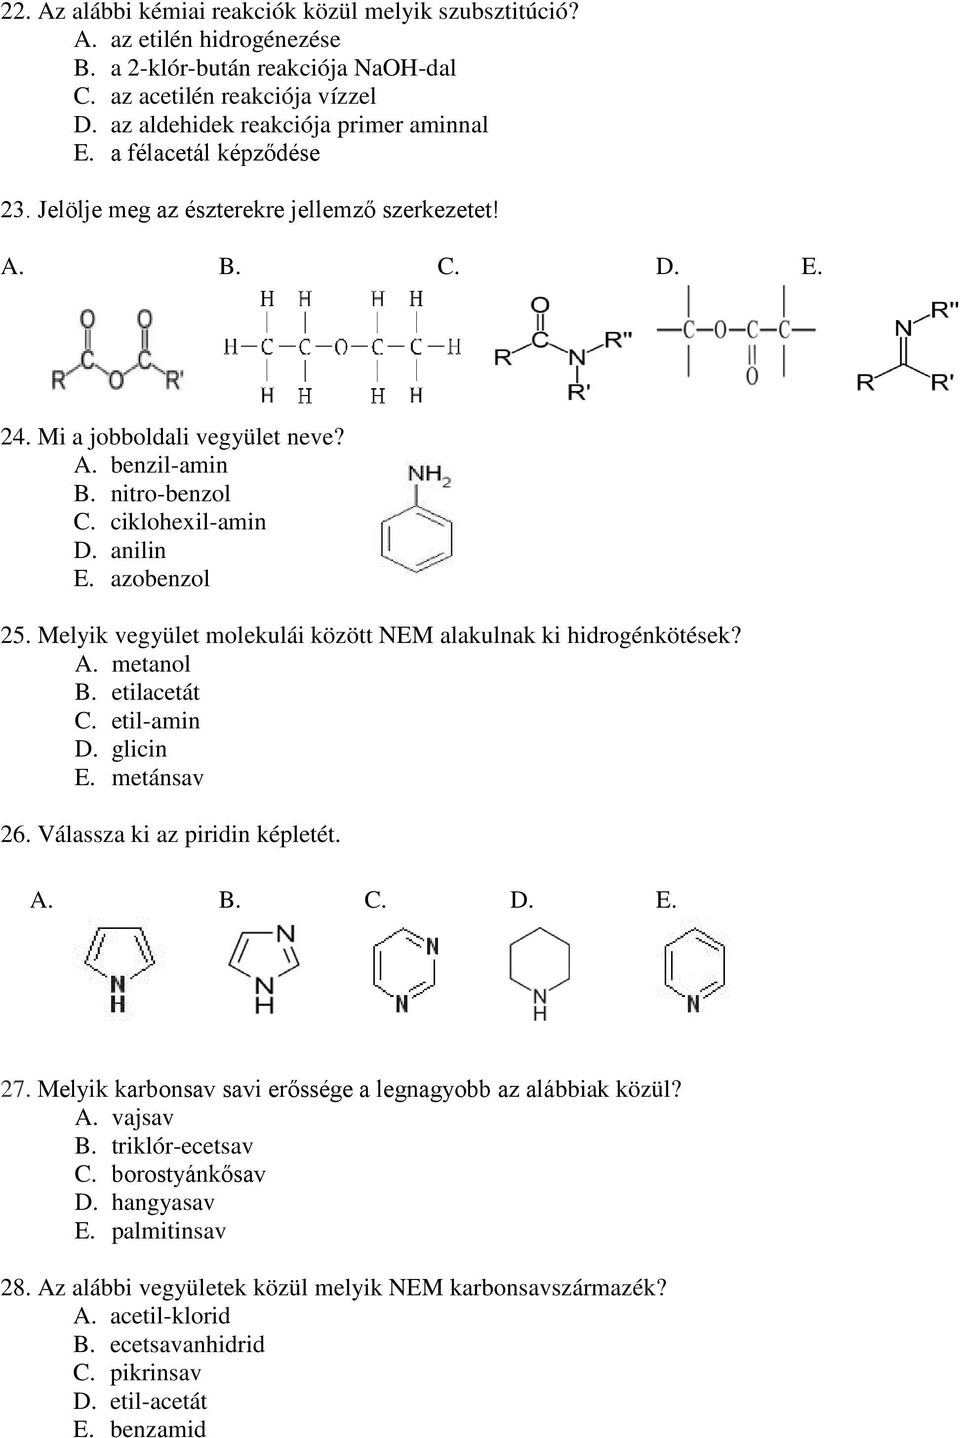 Melyik vegyület molekulái között EM alakulnak ki hidrogénkötések? A. metanol B. etilacetát C. etil-amin D. glicin E. metánsav 26. Válassza ki az piridin képletét. 27.